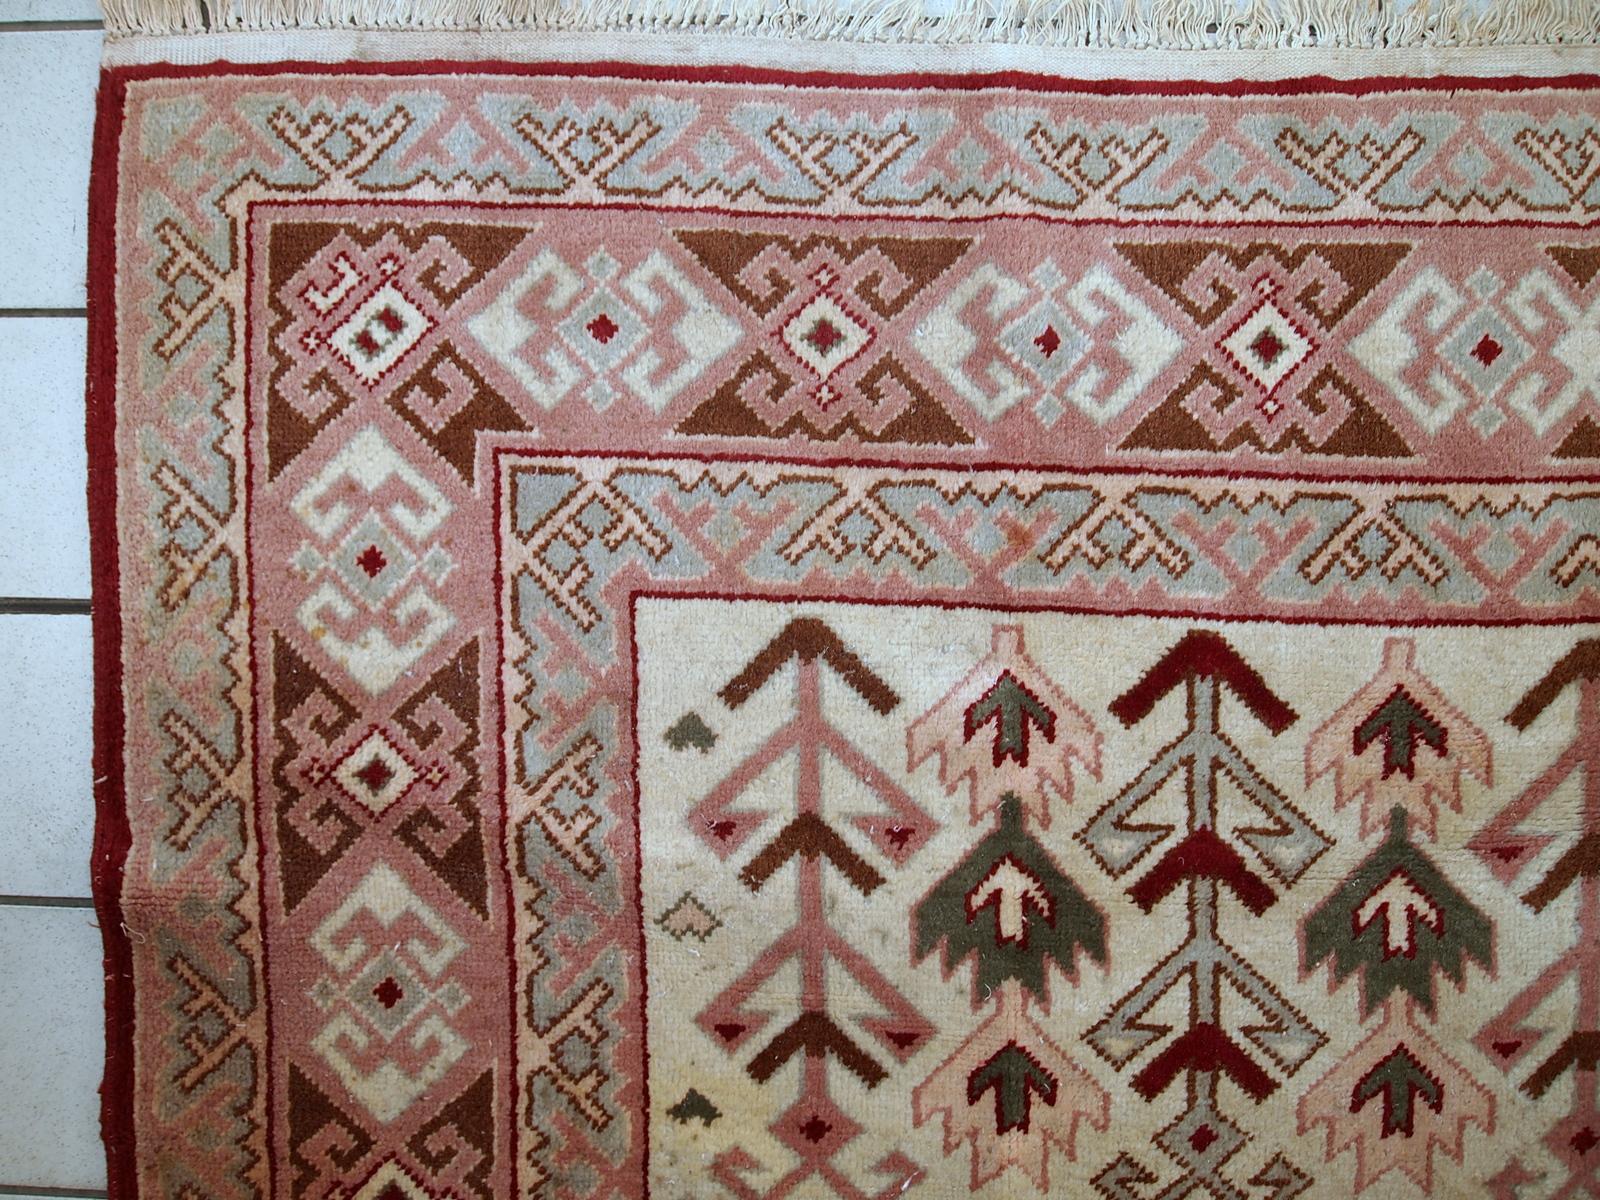 Handgefertigter türkischer Sivas-Teppich mit geometrischem Muster. Der Teppich ist im Originalzustand und stammt aus der Mitte des 20. Jahrhunderts. Der Teppich hat einige Altersverfärbungen.

-Zustand: original, einige